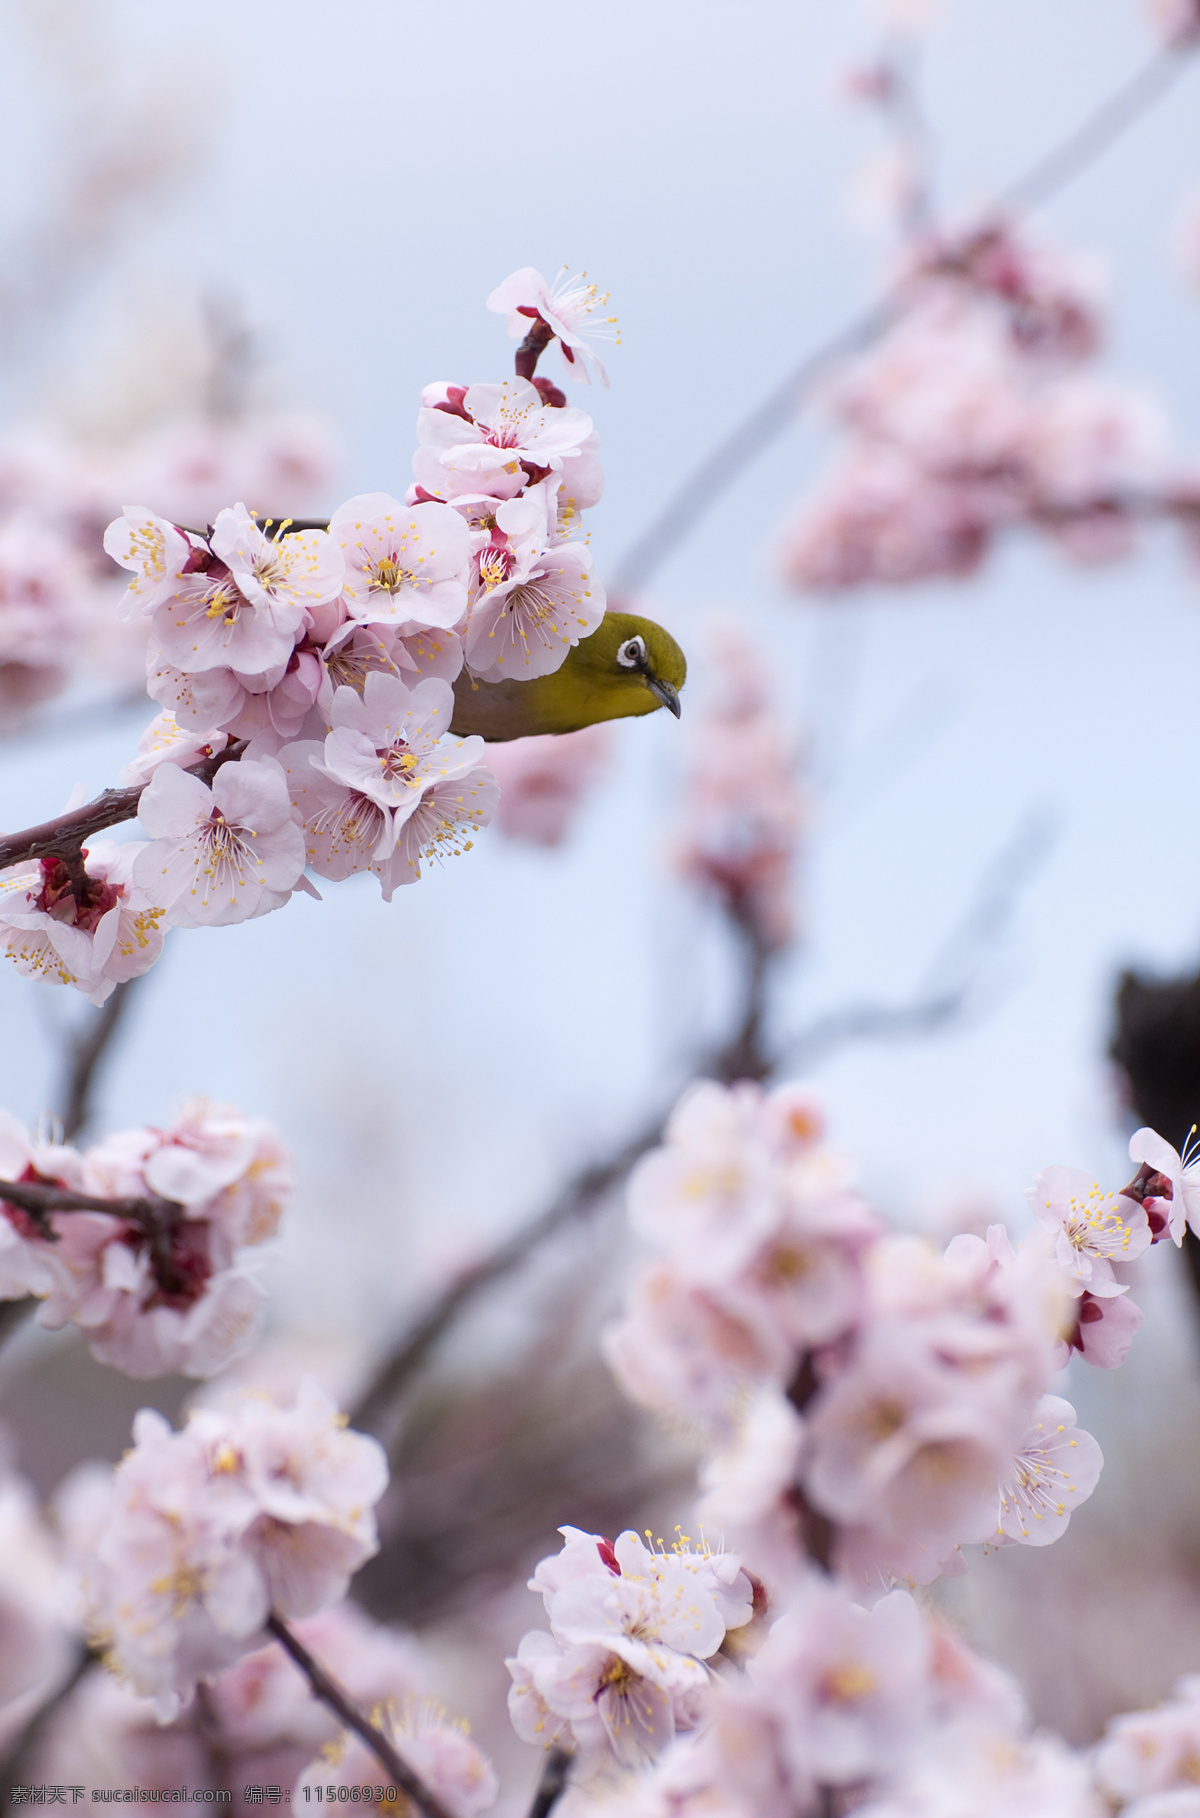 春 櫻 攝 影 春天 櫻花 鳥 背景图片